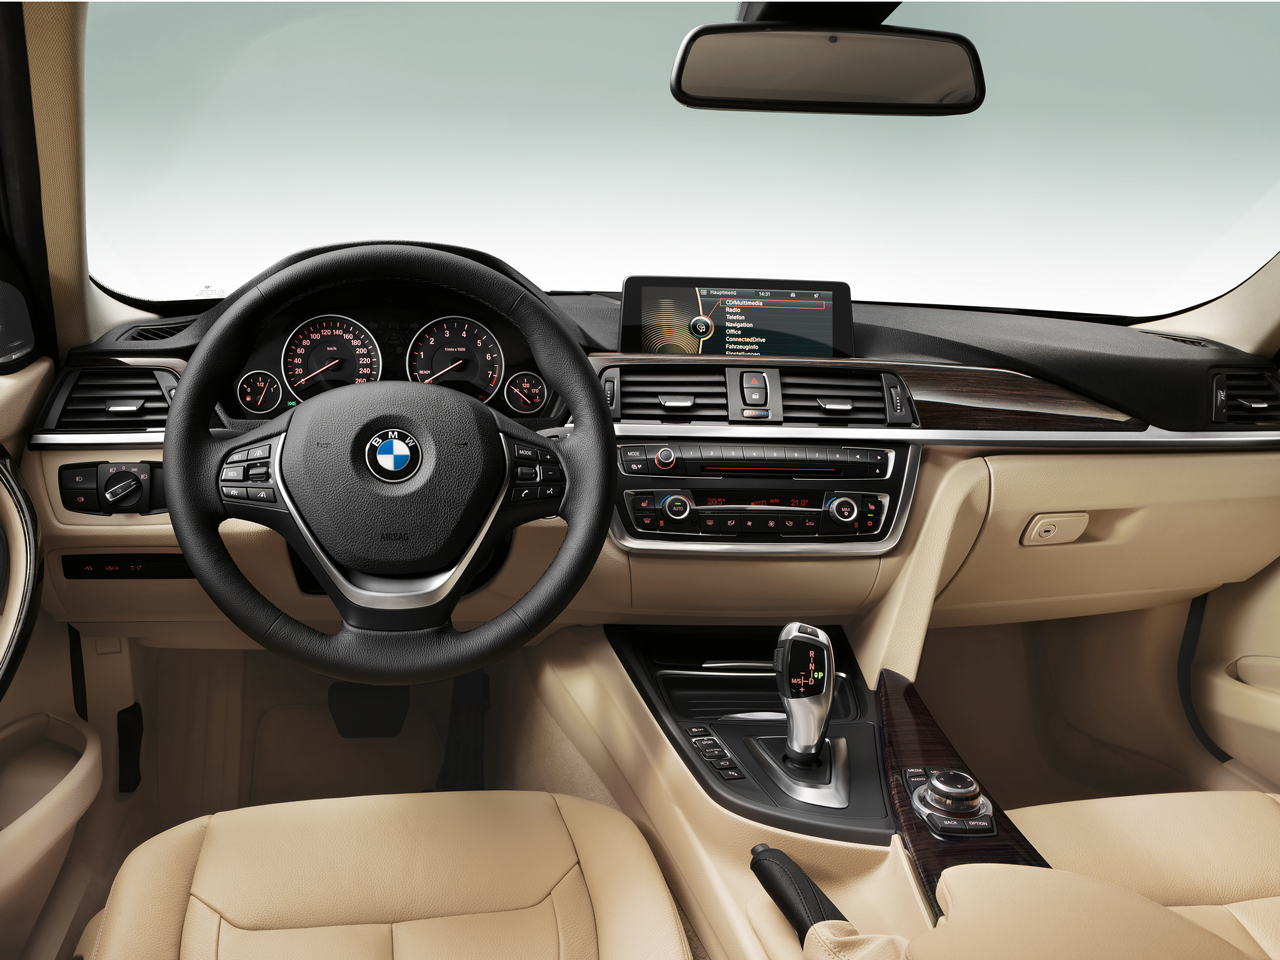 BMW 3シリーズ セダン 2012年モデル 328i Luxuryの価格・性能・装備